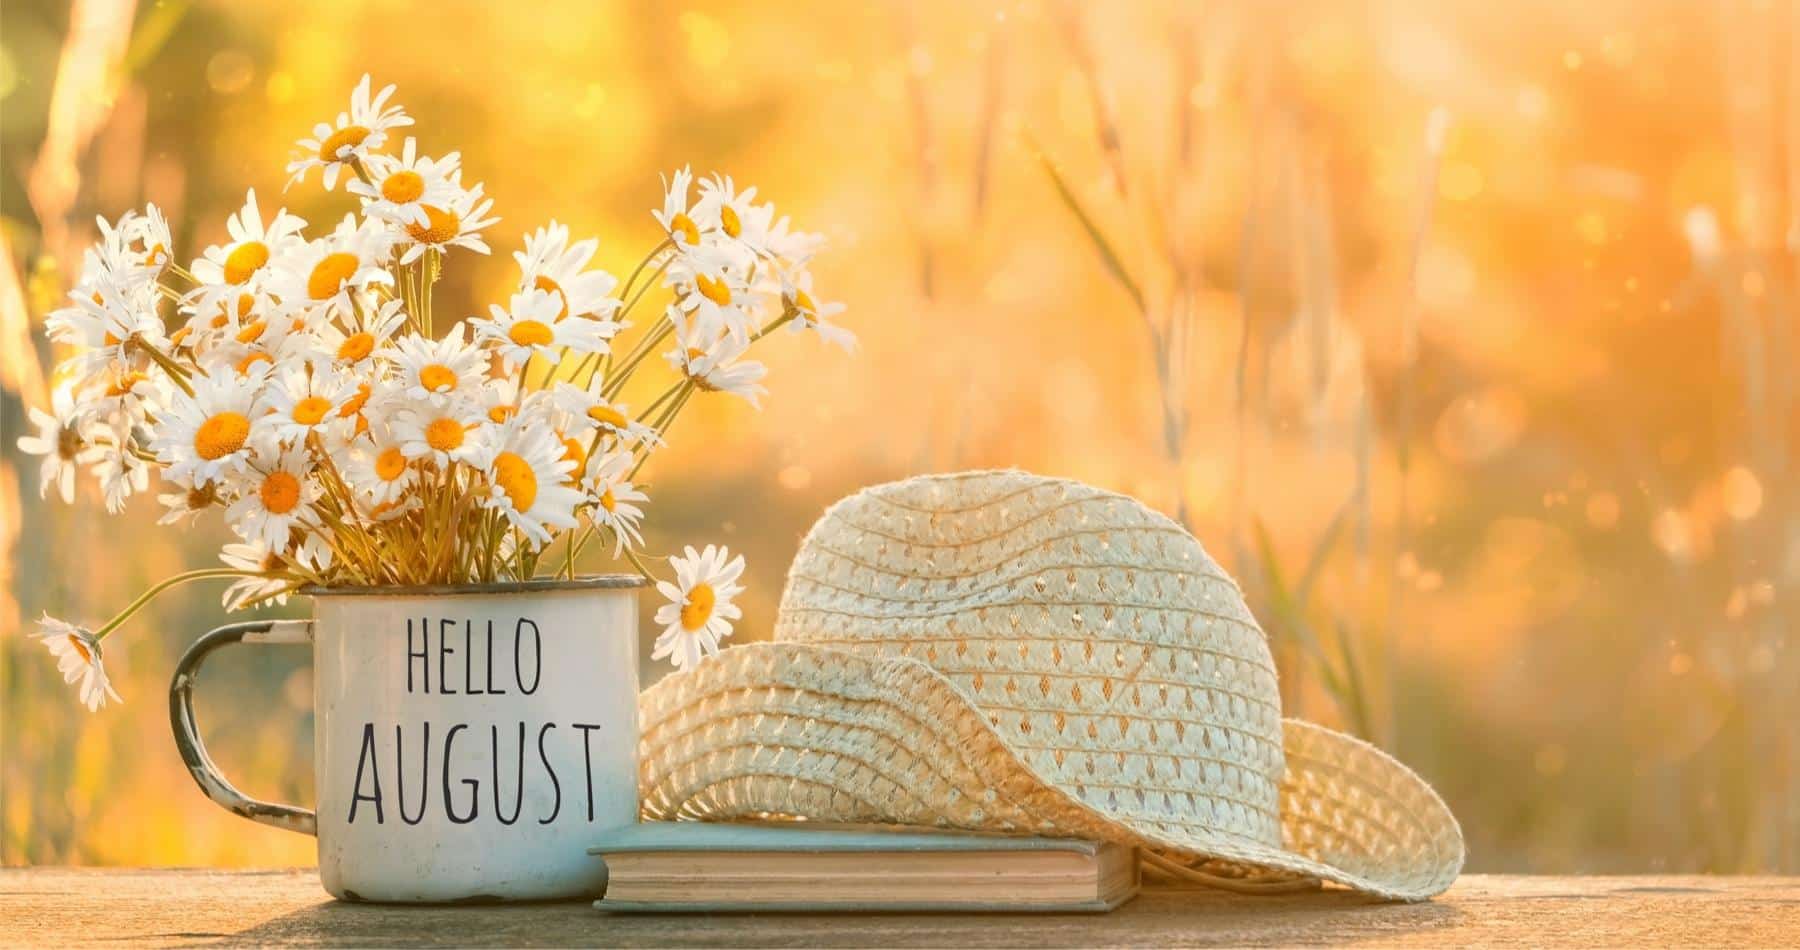 August in your garden